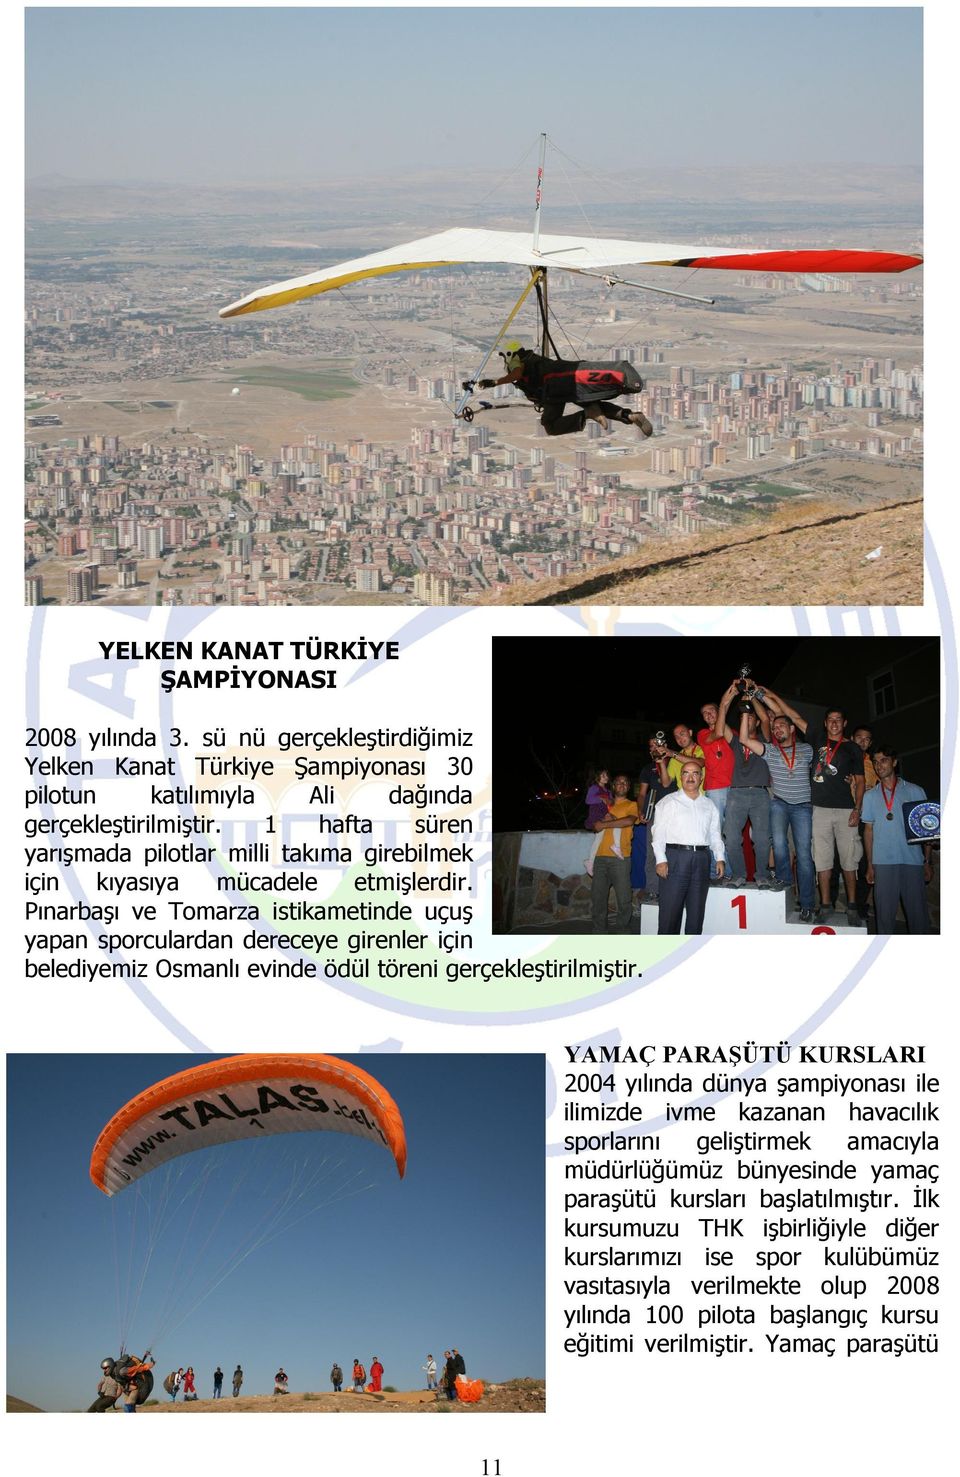 Pınarbaşı ve Tomarza istikametinde uçuş yapan sporculardan dereceye girenler için belediyemiz Osmanlı evinde ödül töreni gerçekleştirilmiştir.